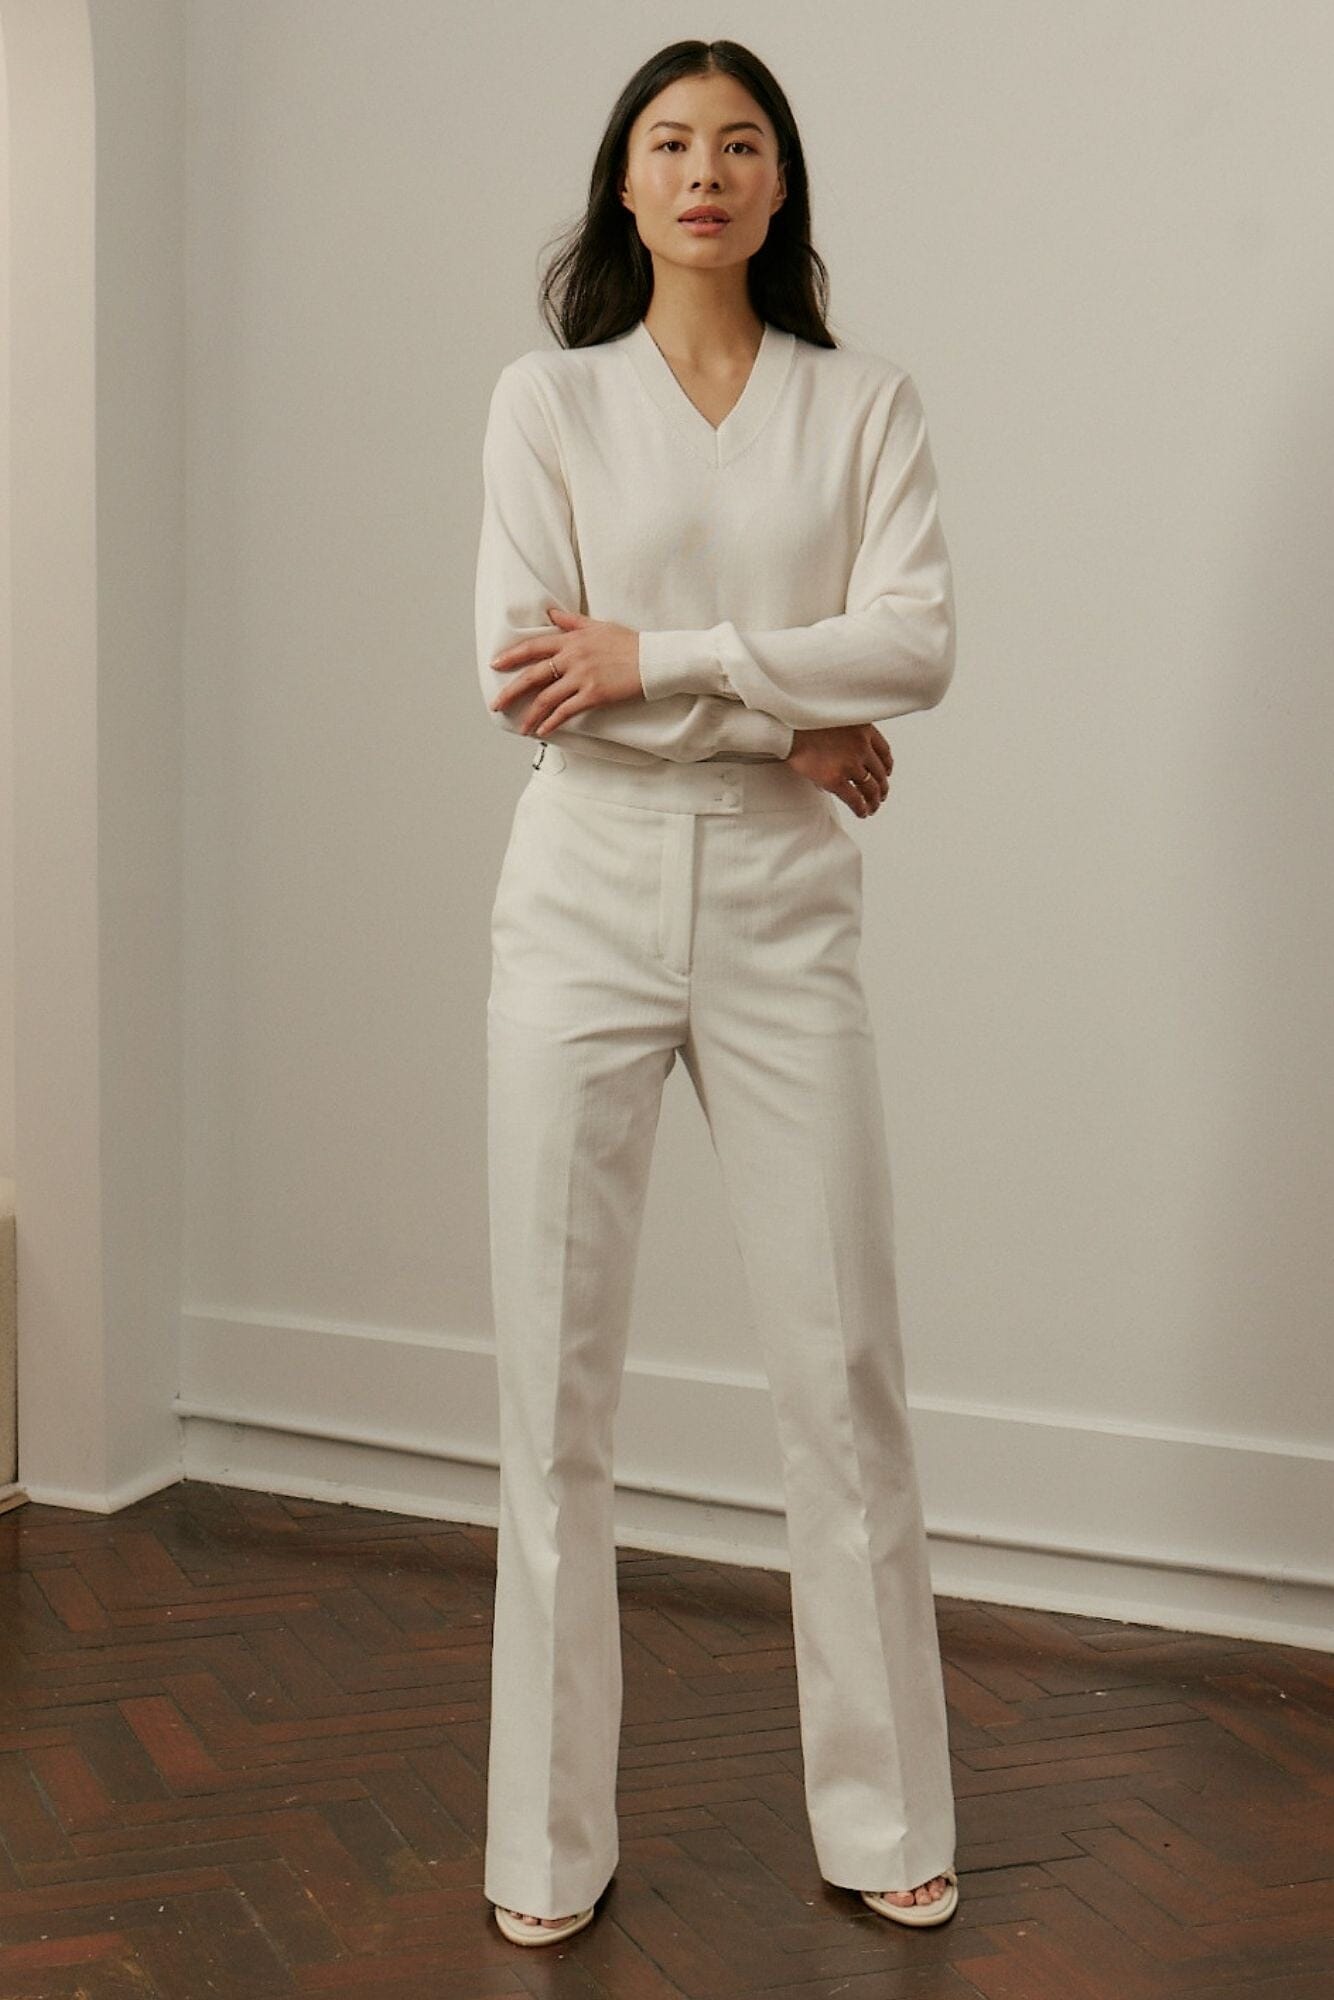 Women's V Neck Merino Wool - Off White